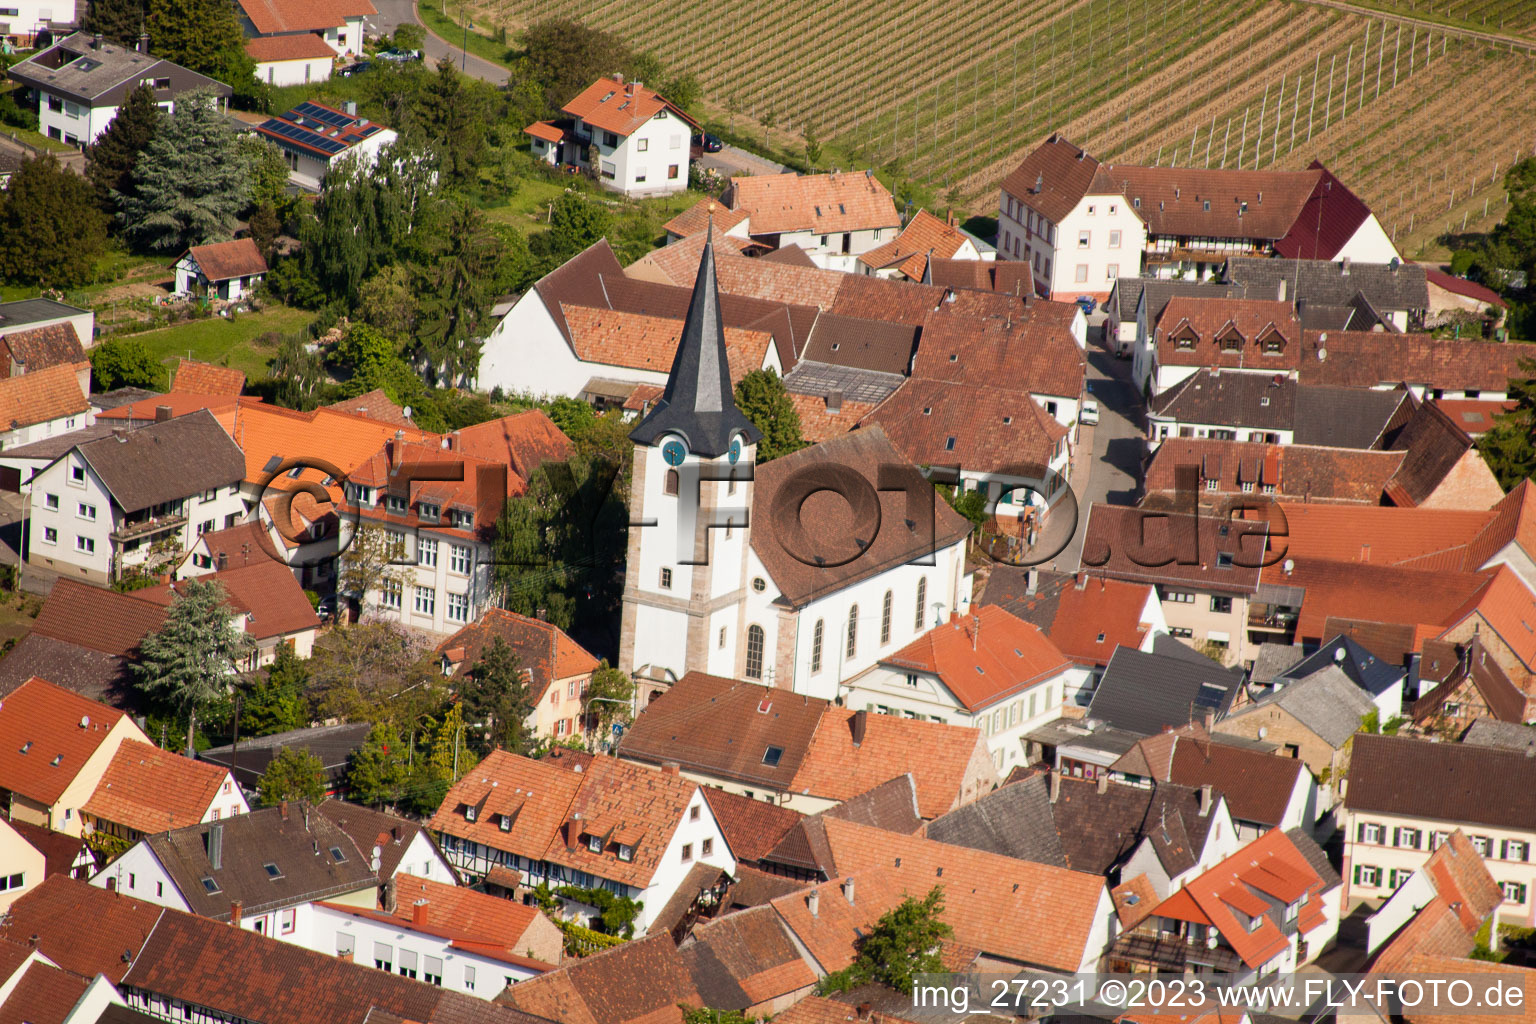 District Mörzheim in Landau in der Pfalz in the state Rhineland-Palatinate, Germany seen from above